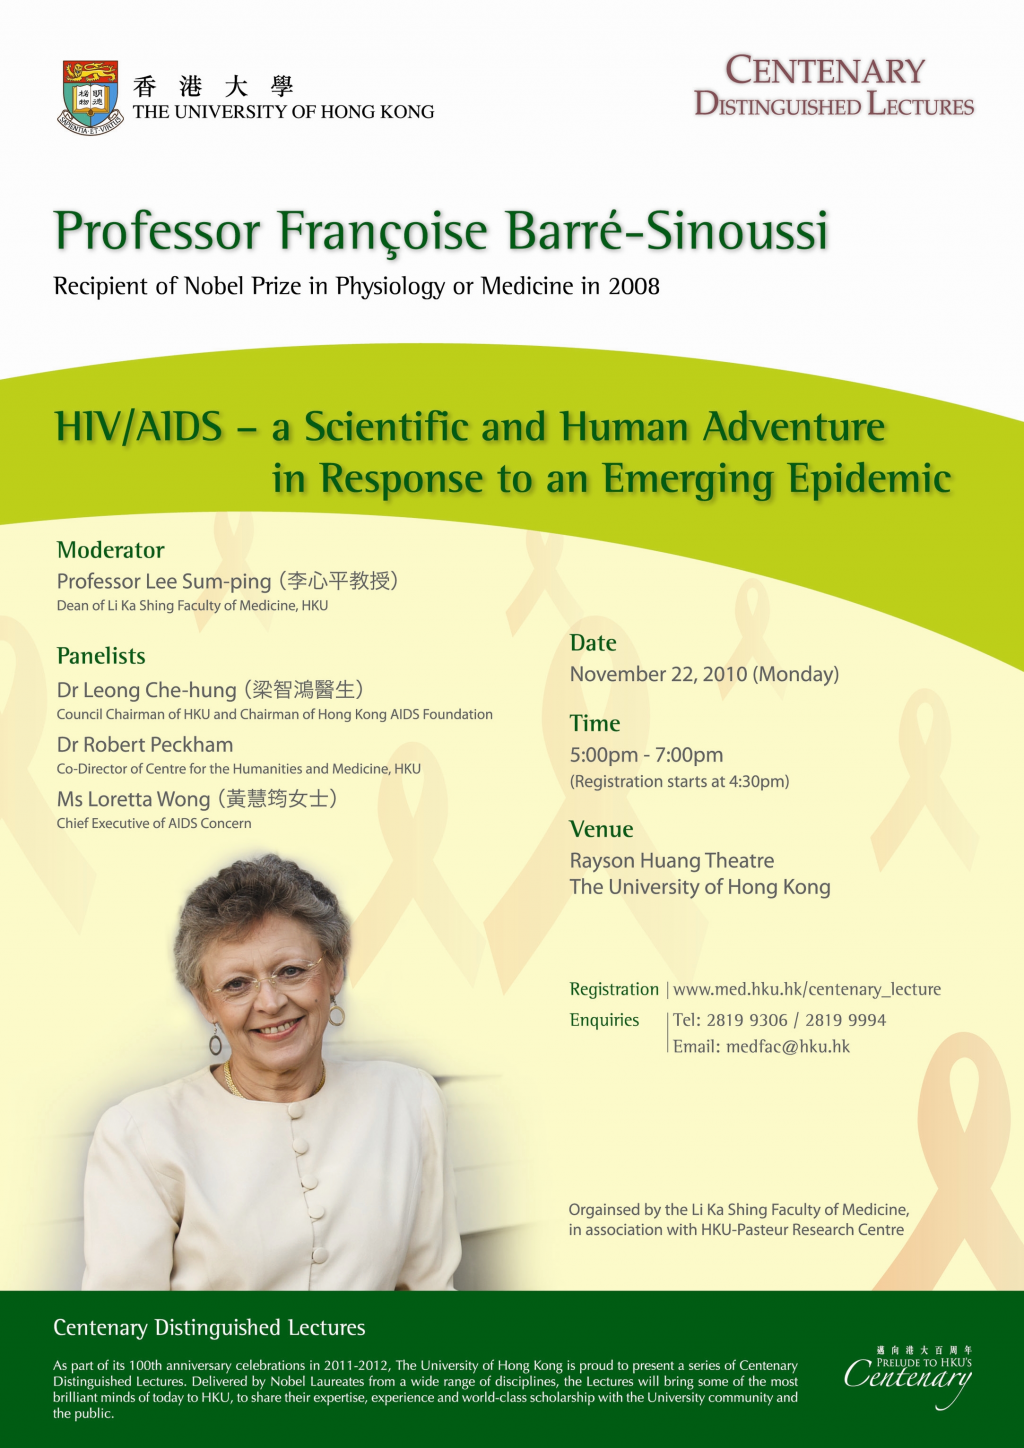 Centenary Distinguished Lecture by Professor Françoise Barré-Sinoussi